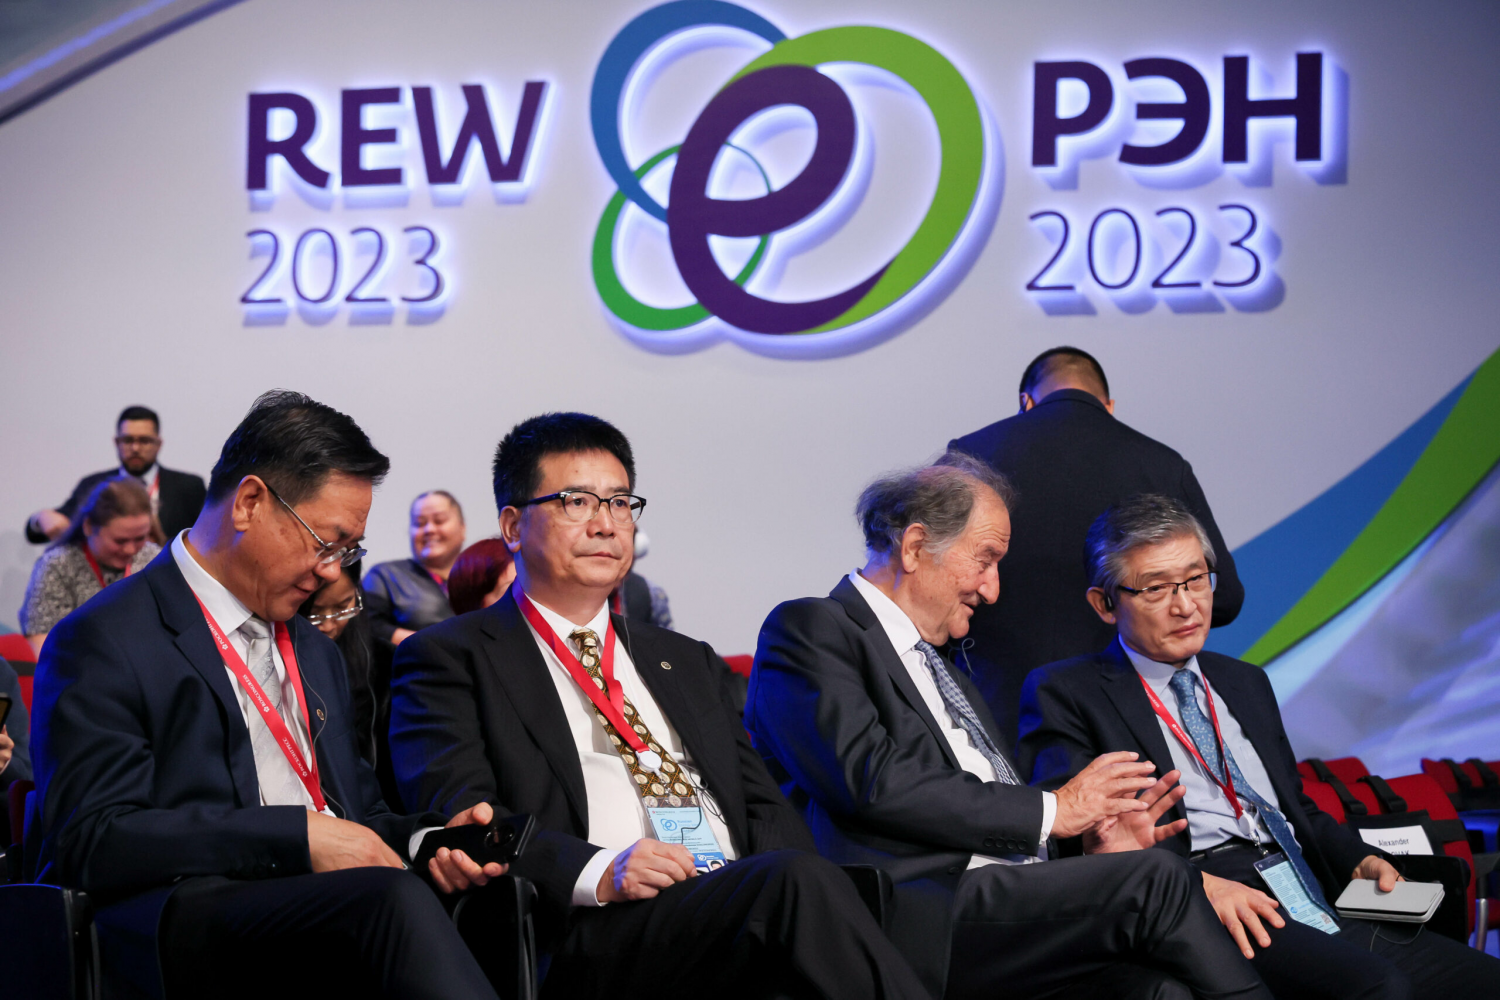 Global Energy Prize 2023: Vinh danh hai nhà khoa học Trung Quốc